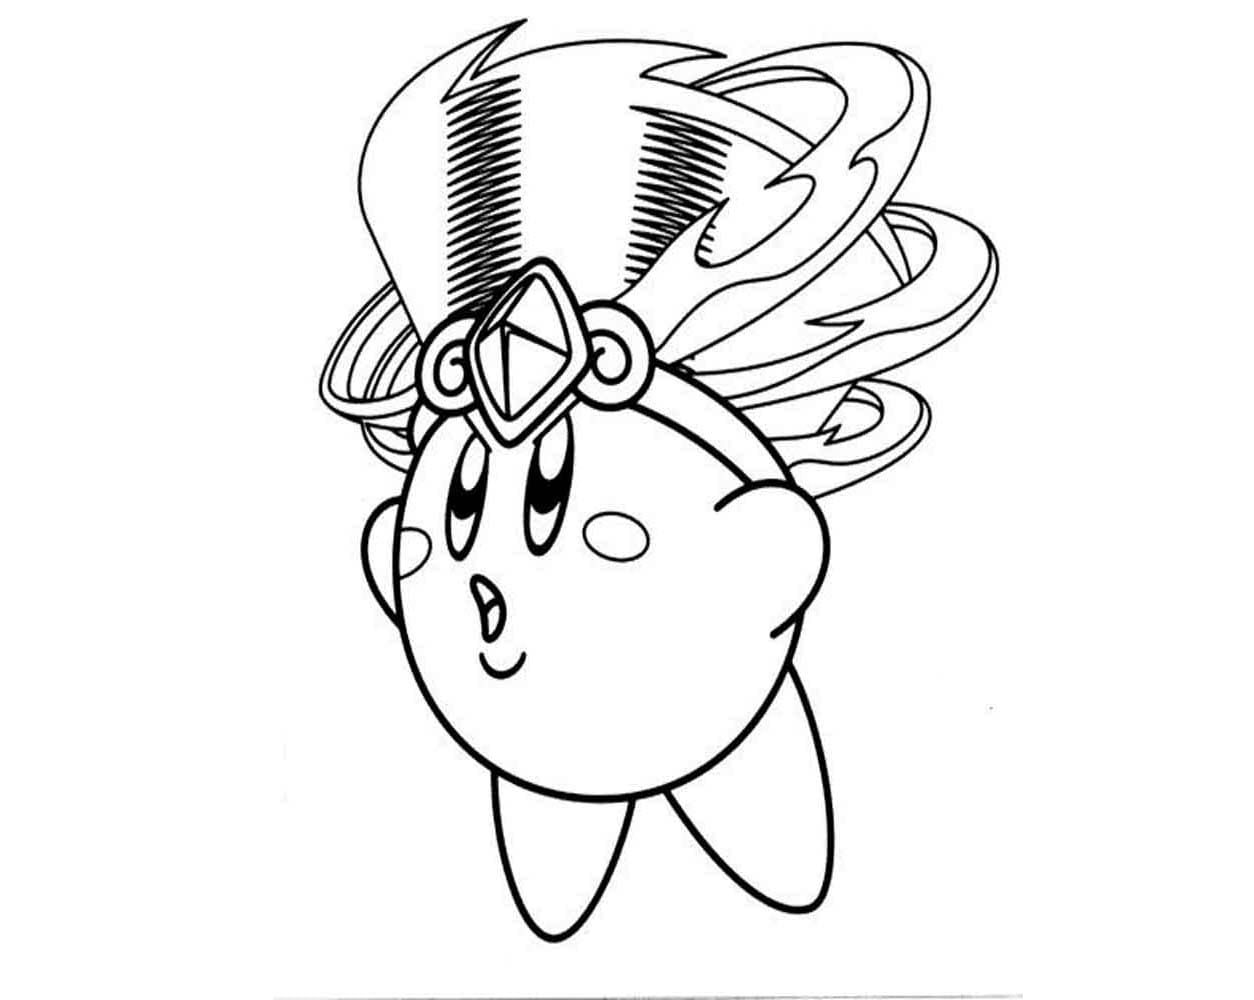 Mooie Kirby-afbeelding